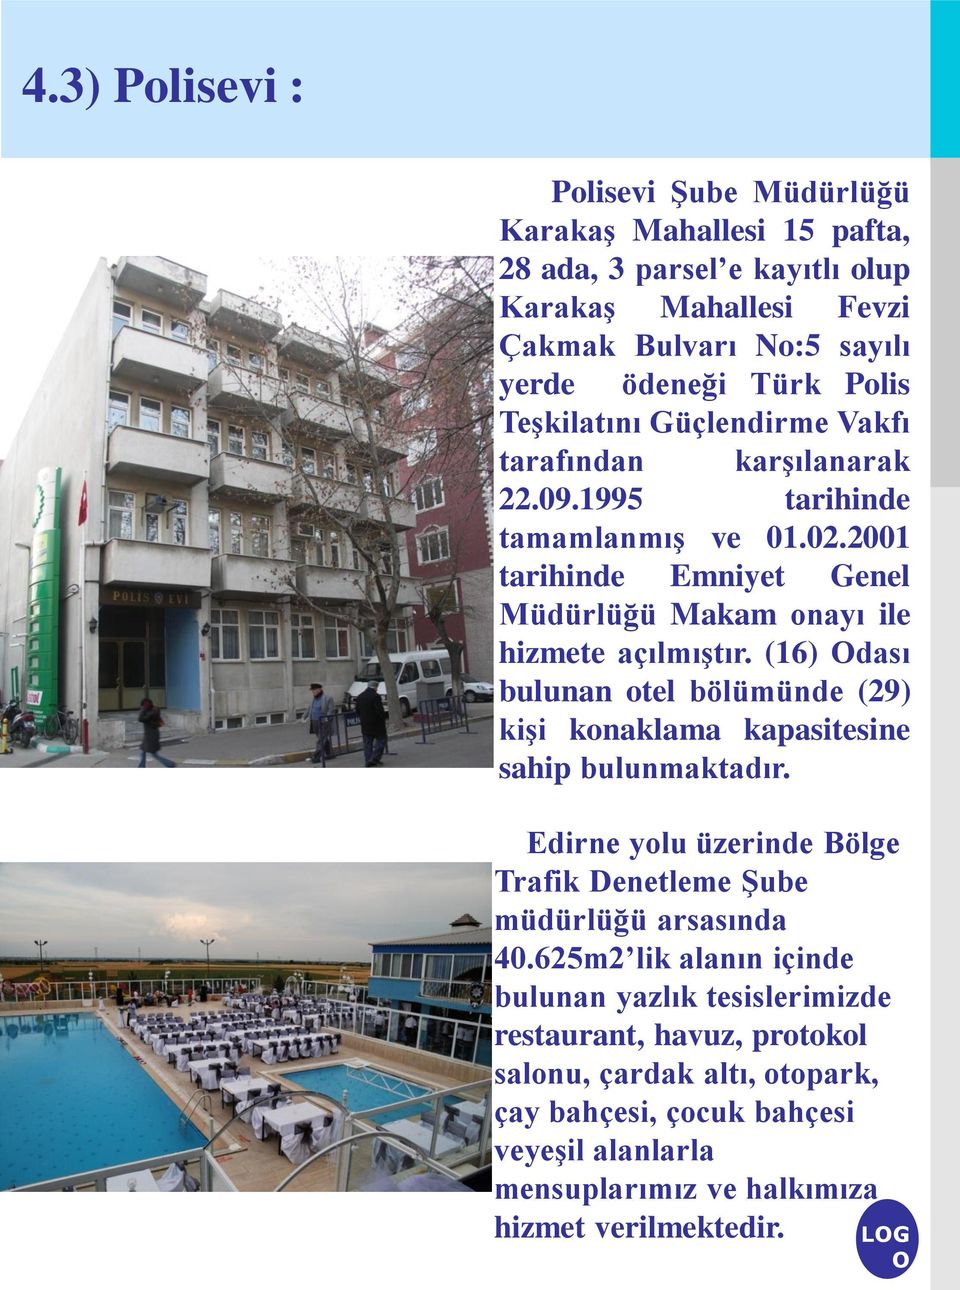 (16) dası bulunan otel bölümünde (29) kişi konaklama kapasitesine sahip bulunmaktadır. Edirne yolu üzerinde Bölge Trafik Denetleme Şube müdürlüğü arsasında 40.